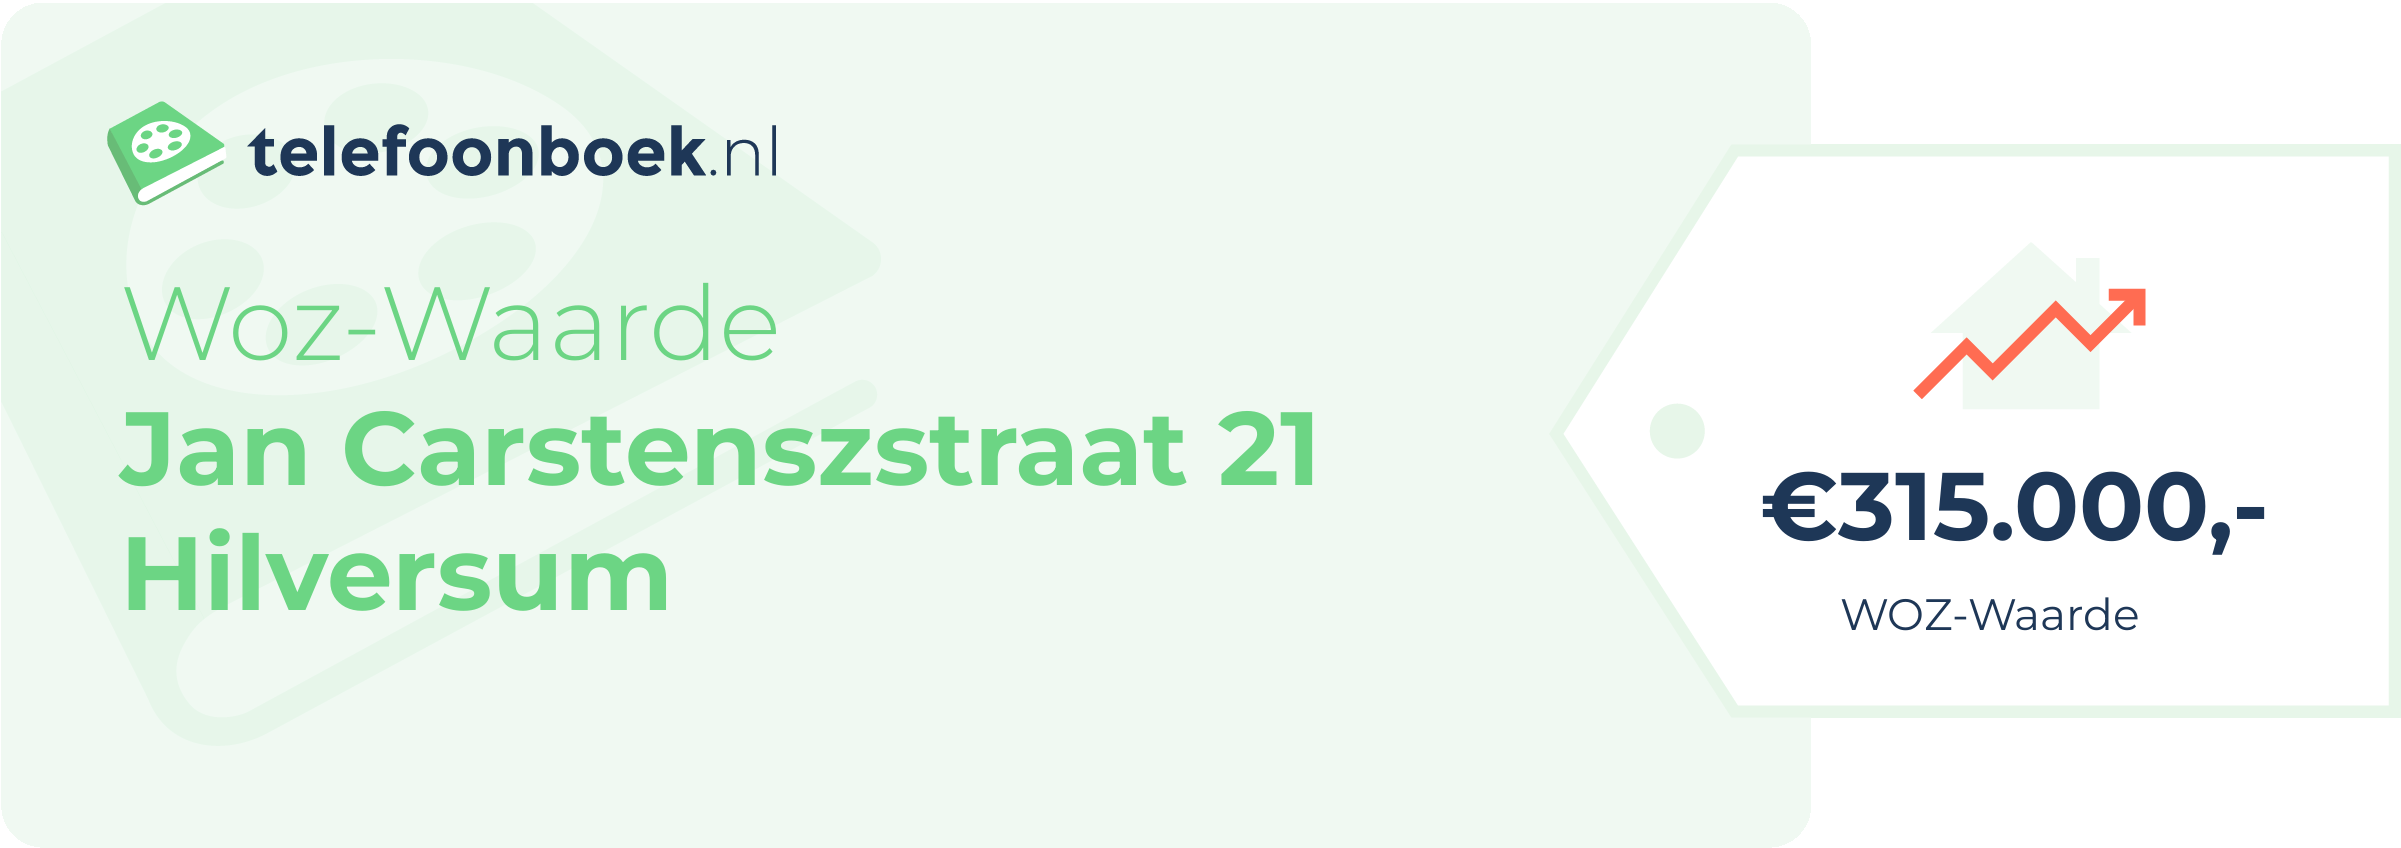 WOZ-waarde Jan Carstenszstraat 21 Hilversum